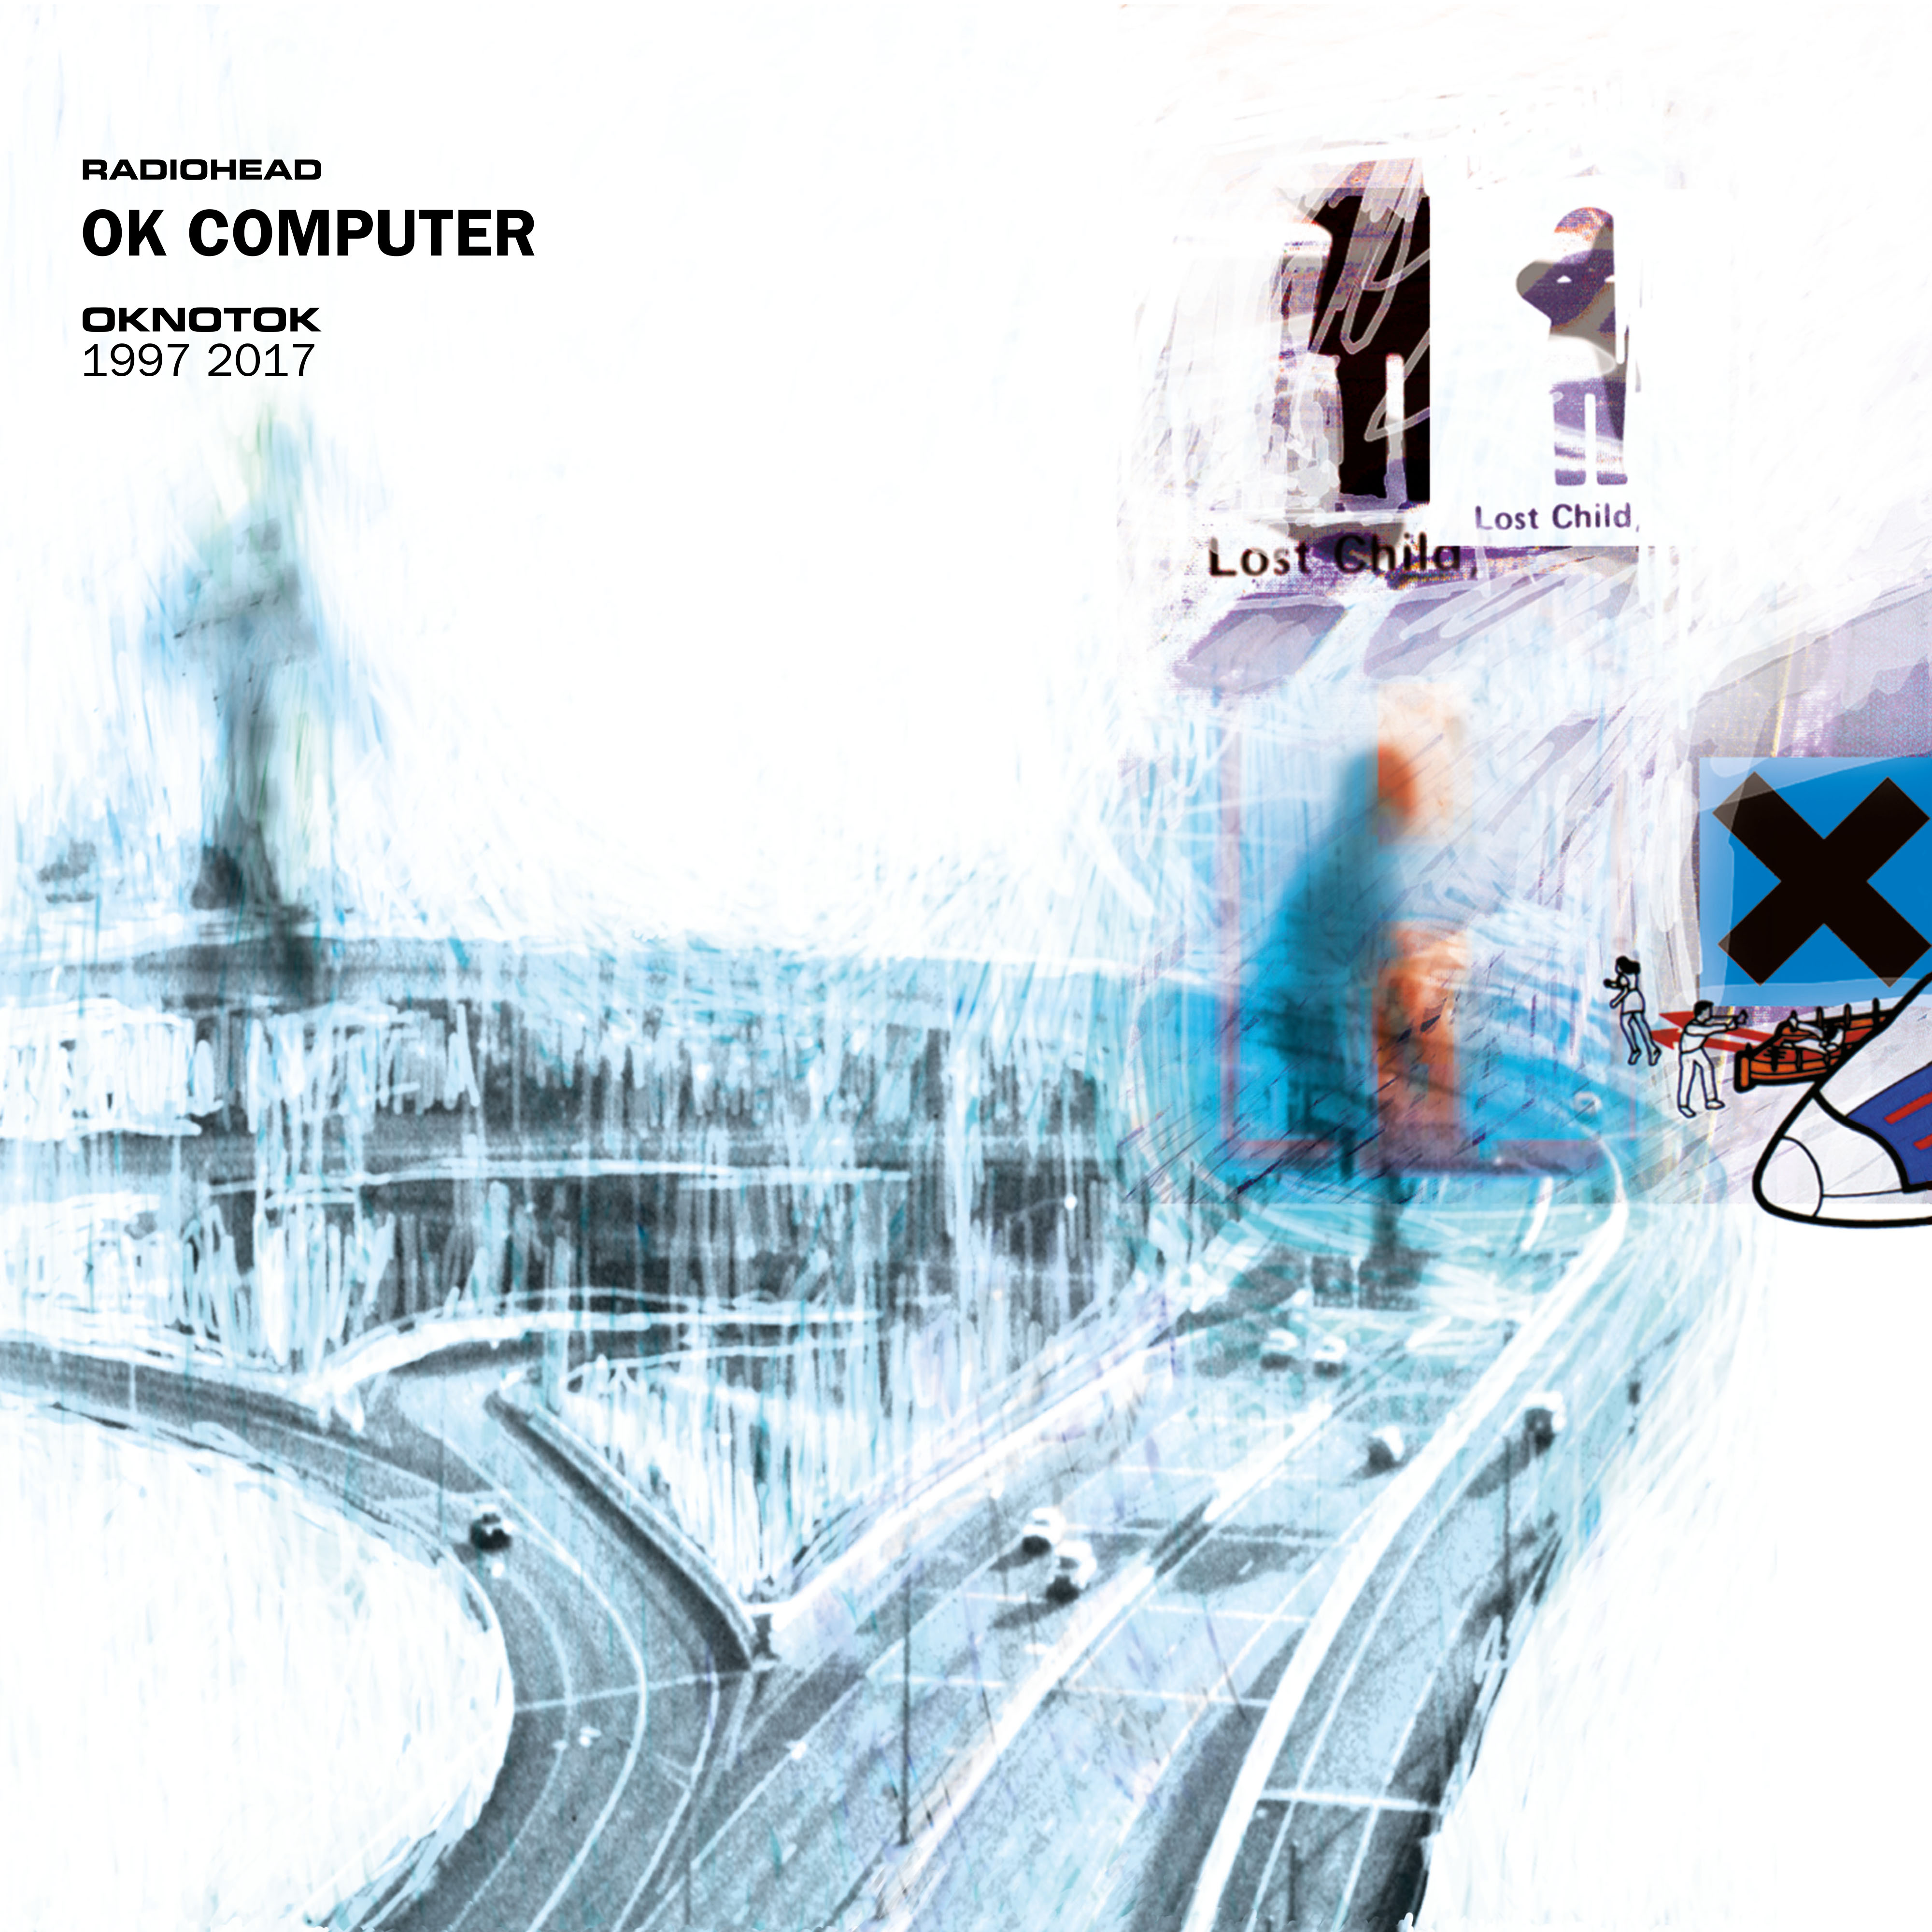 Radiohead - OK COMPUTER OKNOTOK 1997-2017 (Reis - 2xCD